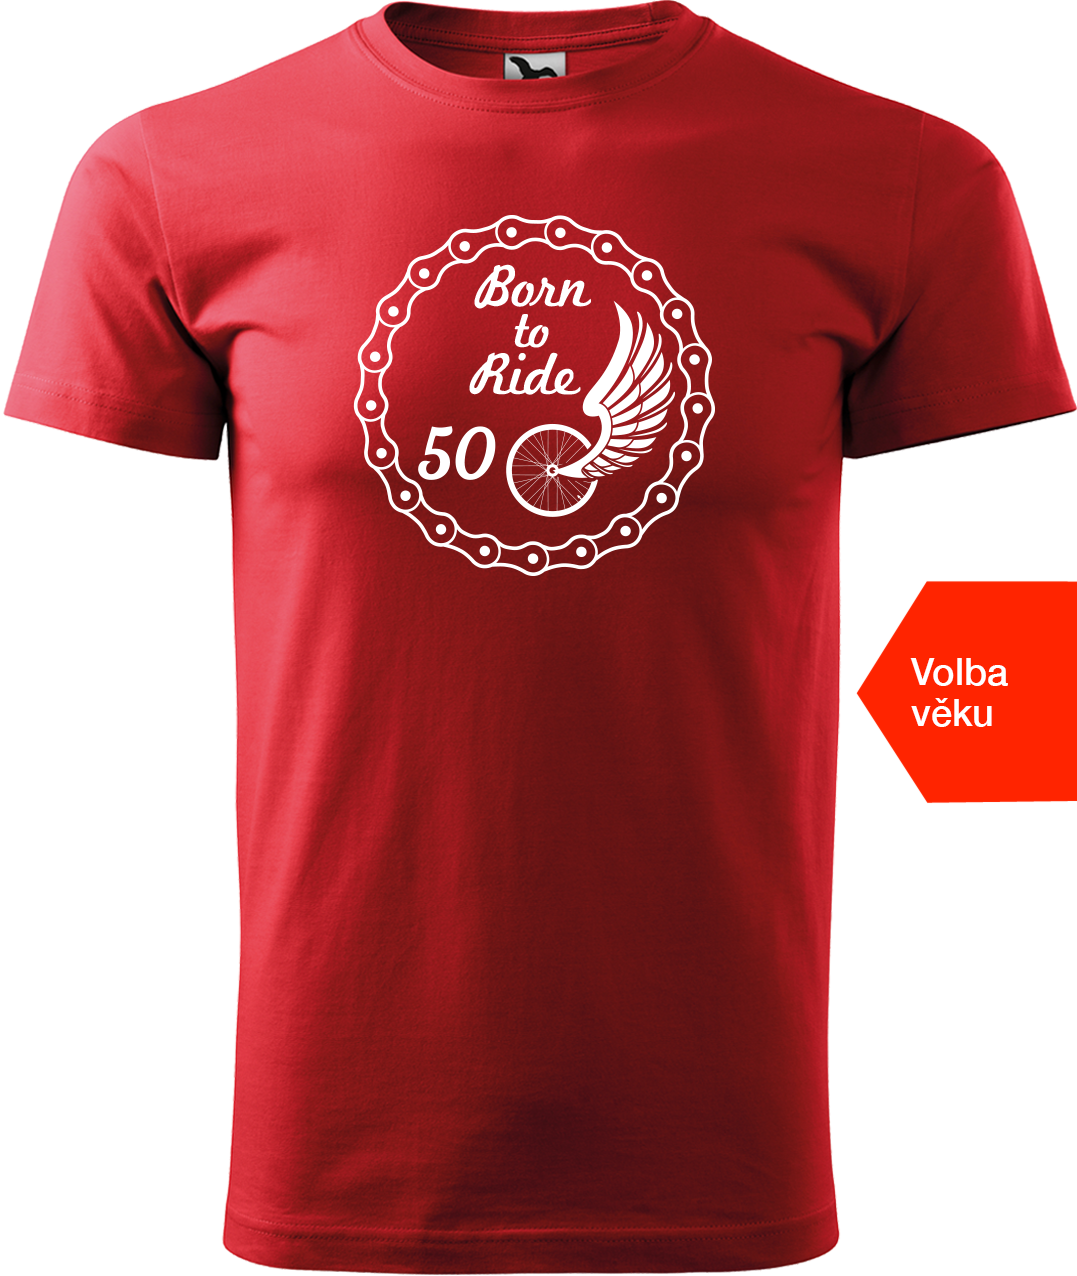 Pánské tričko pro cyklistu s věkem - Born to Ride (wings) Velikost: S, Barva: Červená (07)